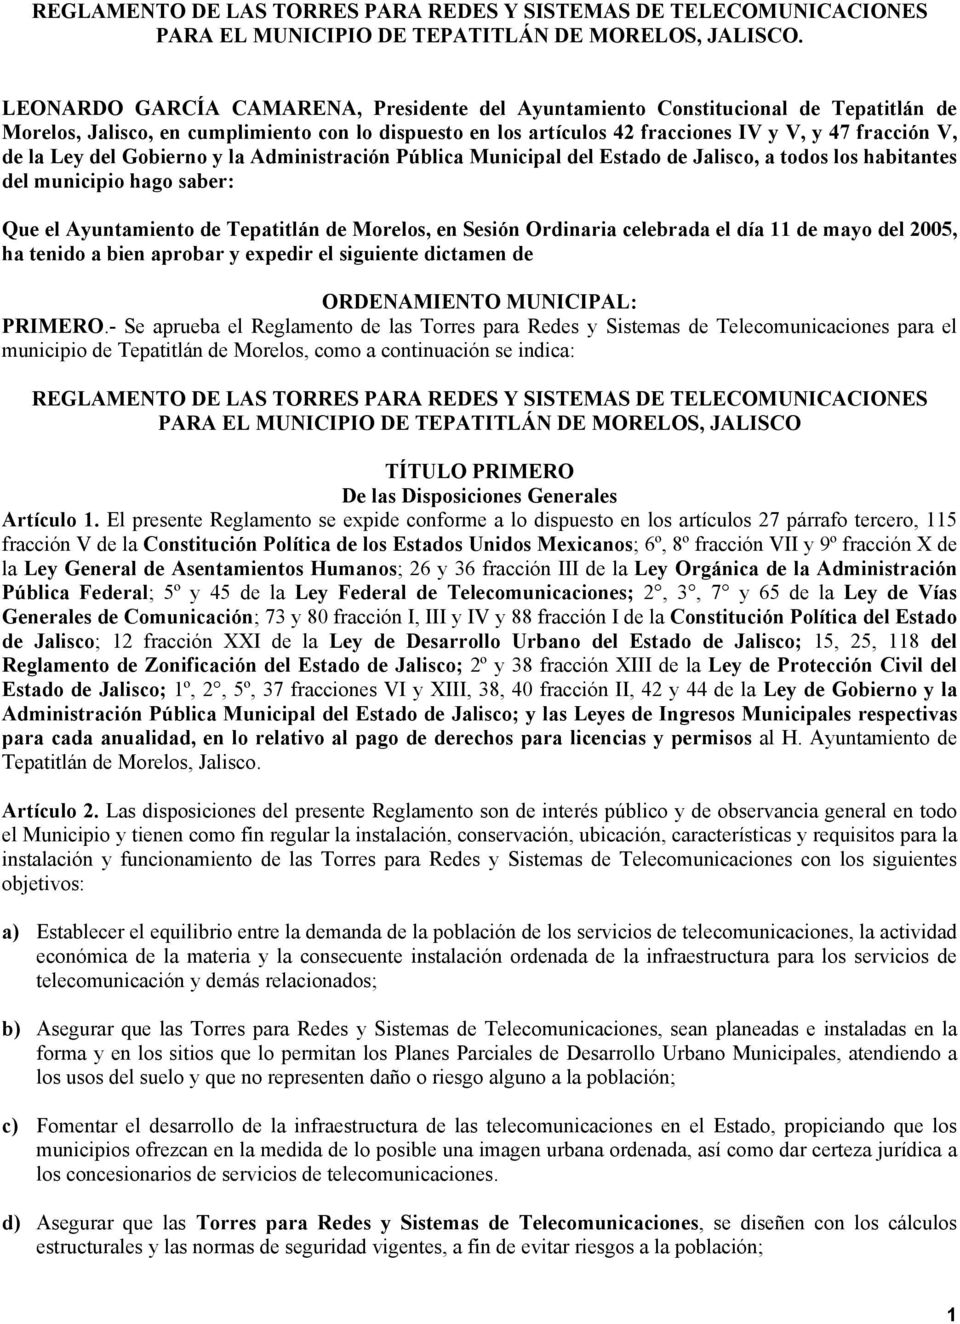 Ley del Gobierno y la Administración Pública Municipal del Estado de Jalisco, a todos los habitantes del municipio hago saber: Que el Ayuntamiento de Tepatitlán de Morelos, en Sesión Ordinaria